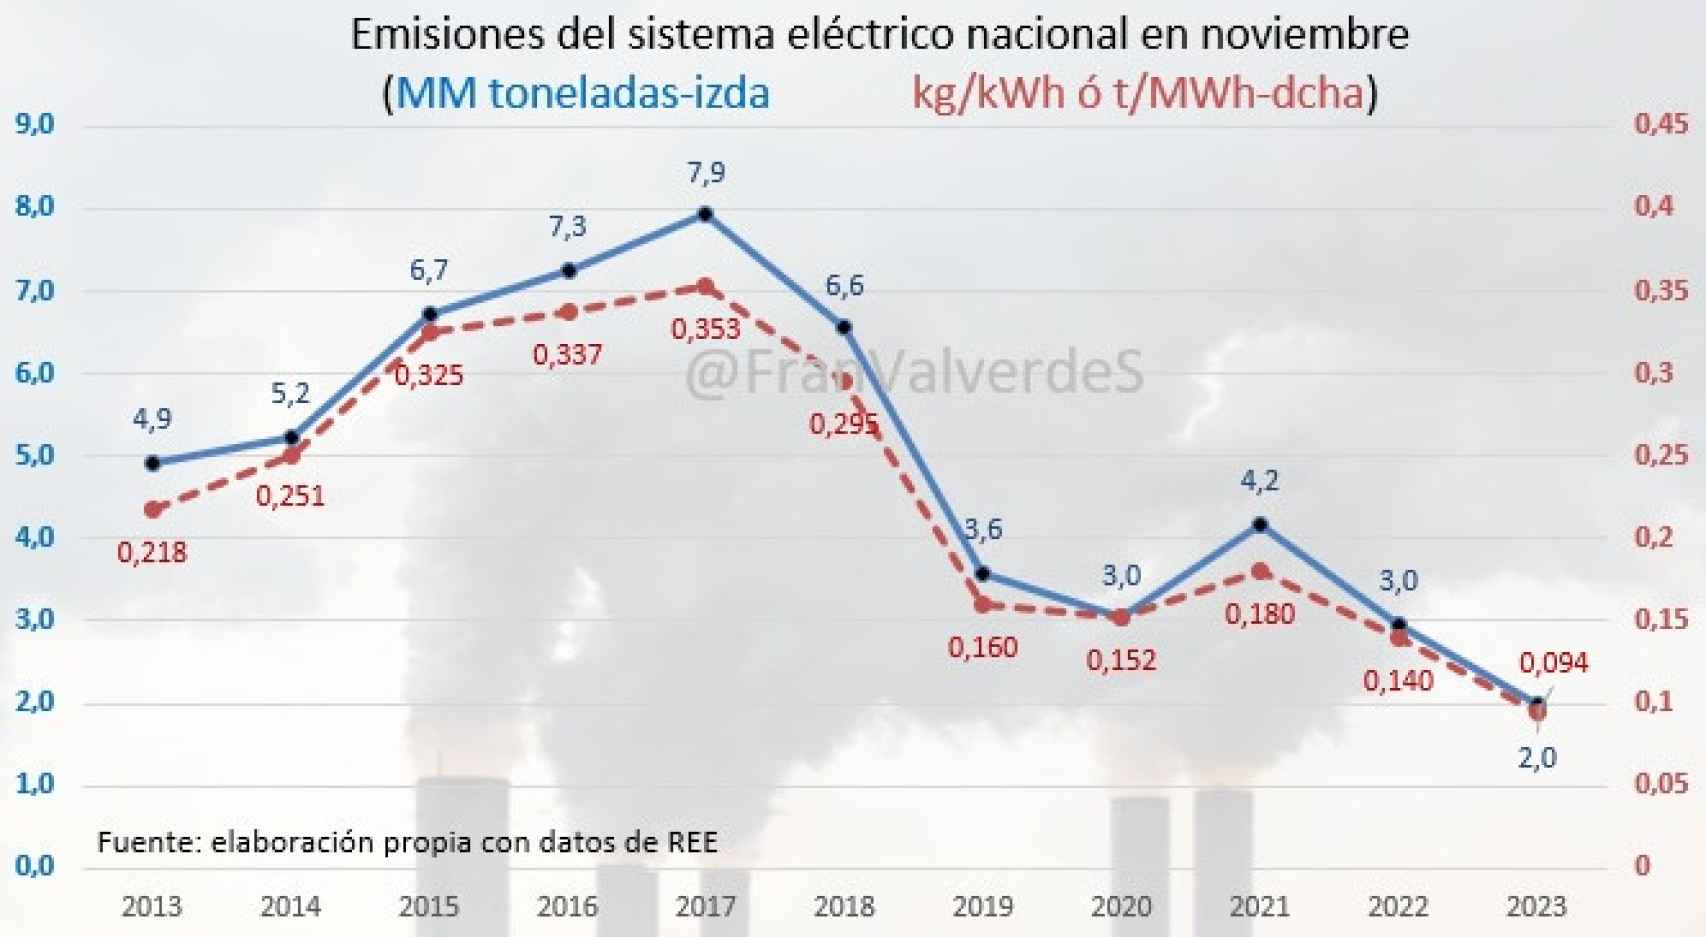 Emisiones del sistema eléctrico nacional en noviembre de 2023